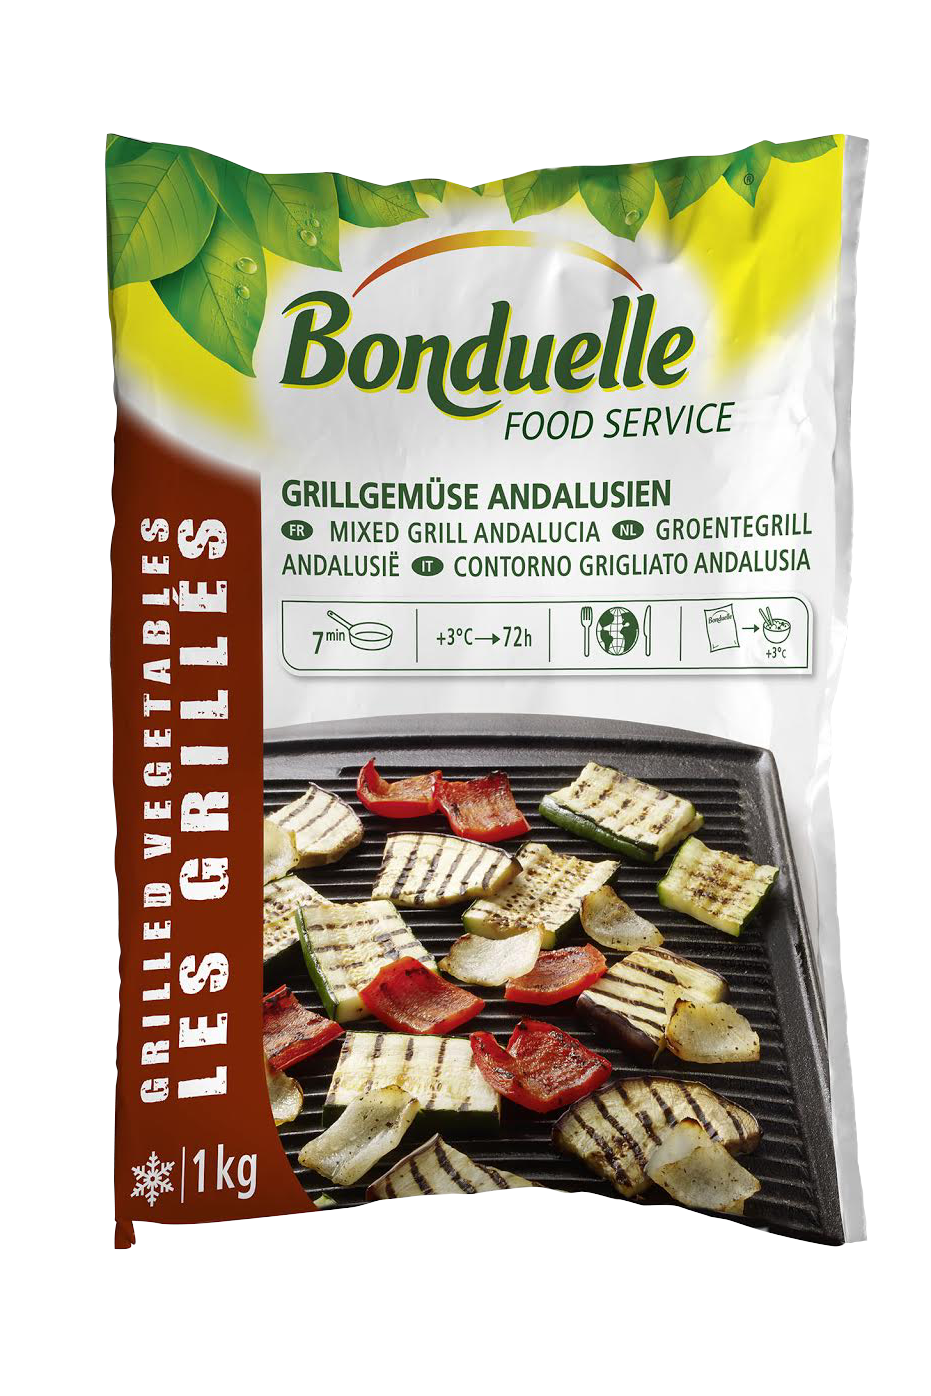 Gemengde Groentegrill Andalusie 1kg IQF Bonduelle Food Service Diepvries